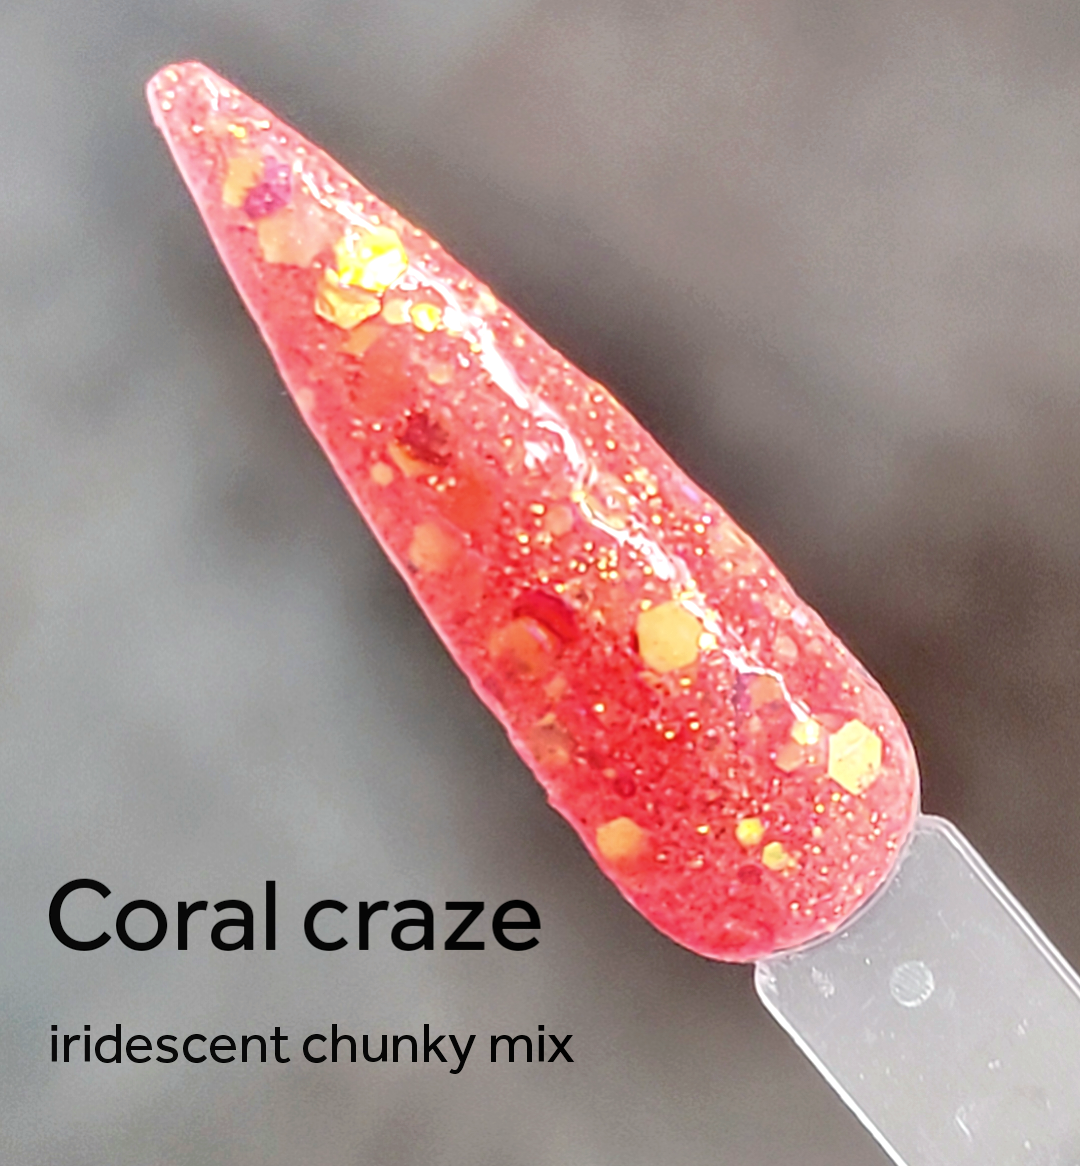 Coral craze